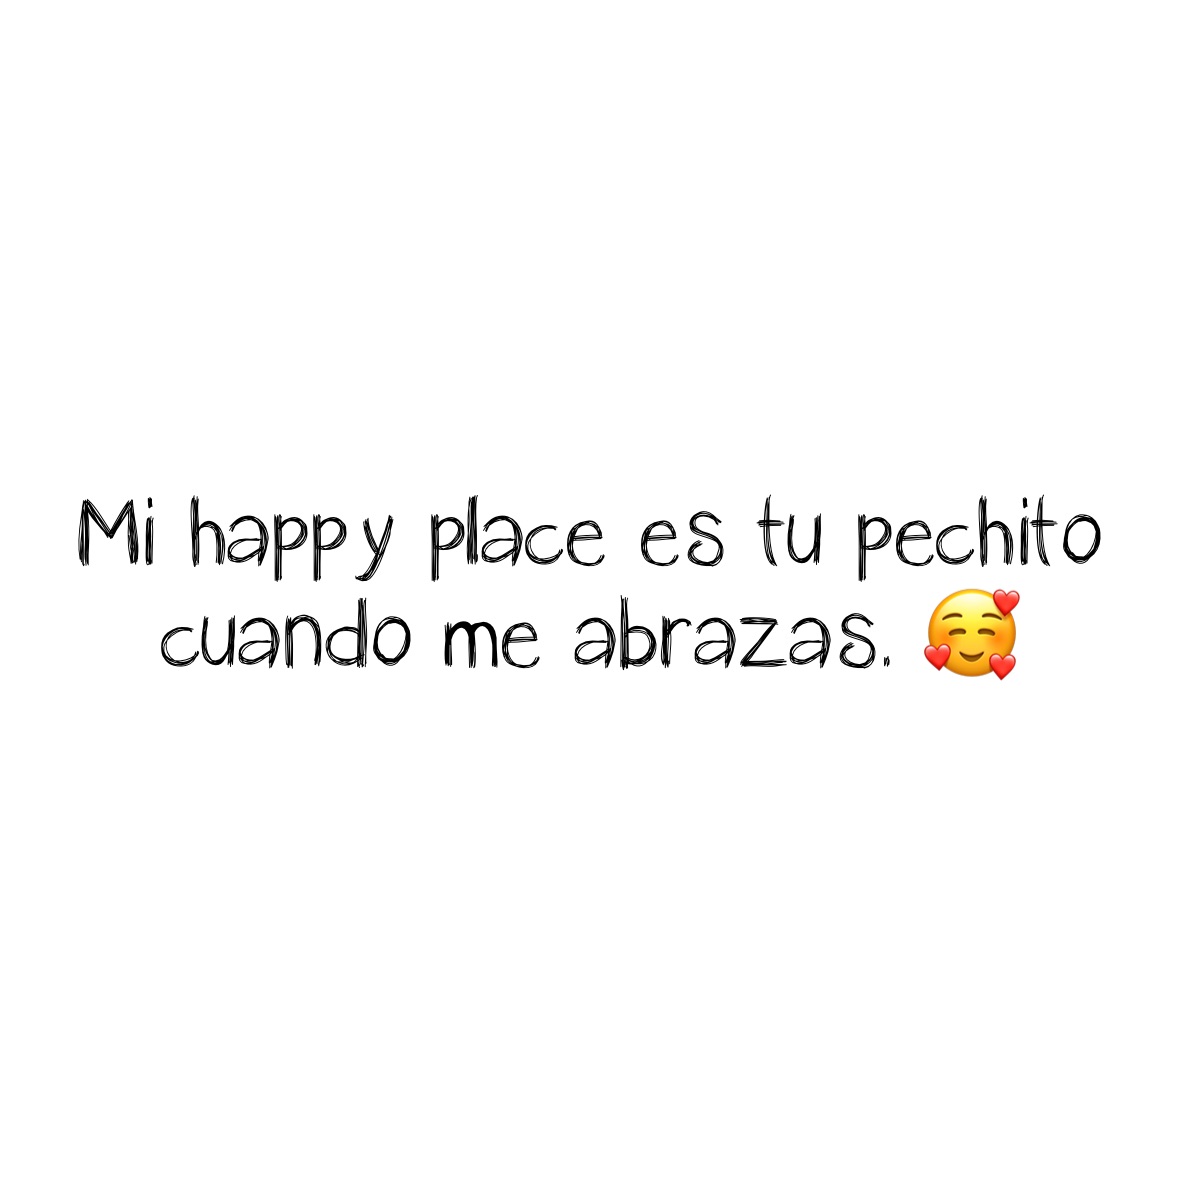 Mi happy place es tu pechito cuando me abrazas. 🥰